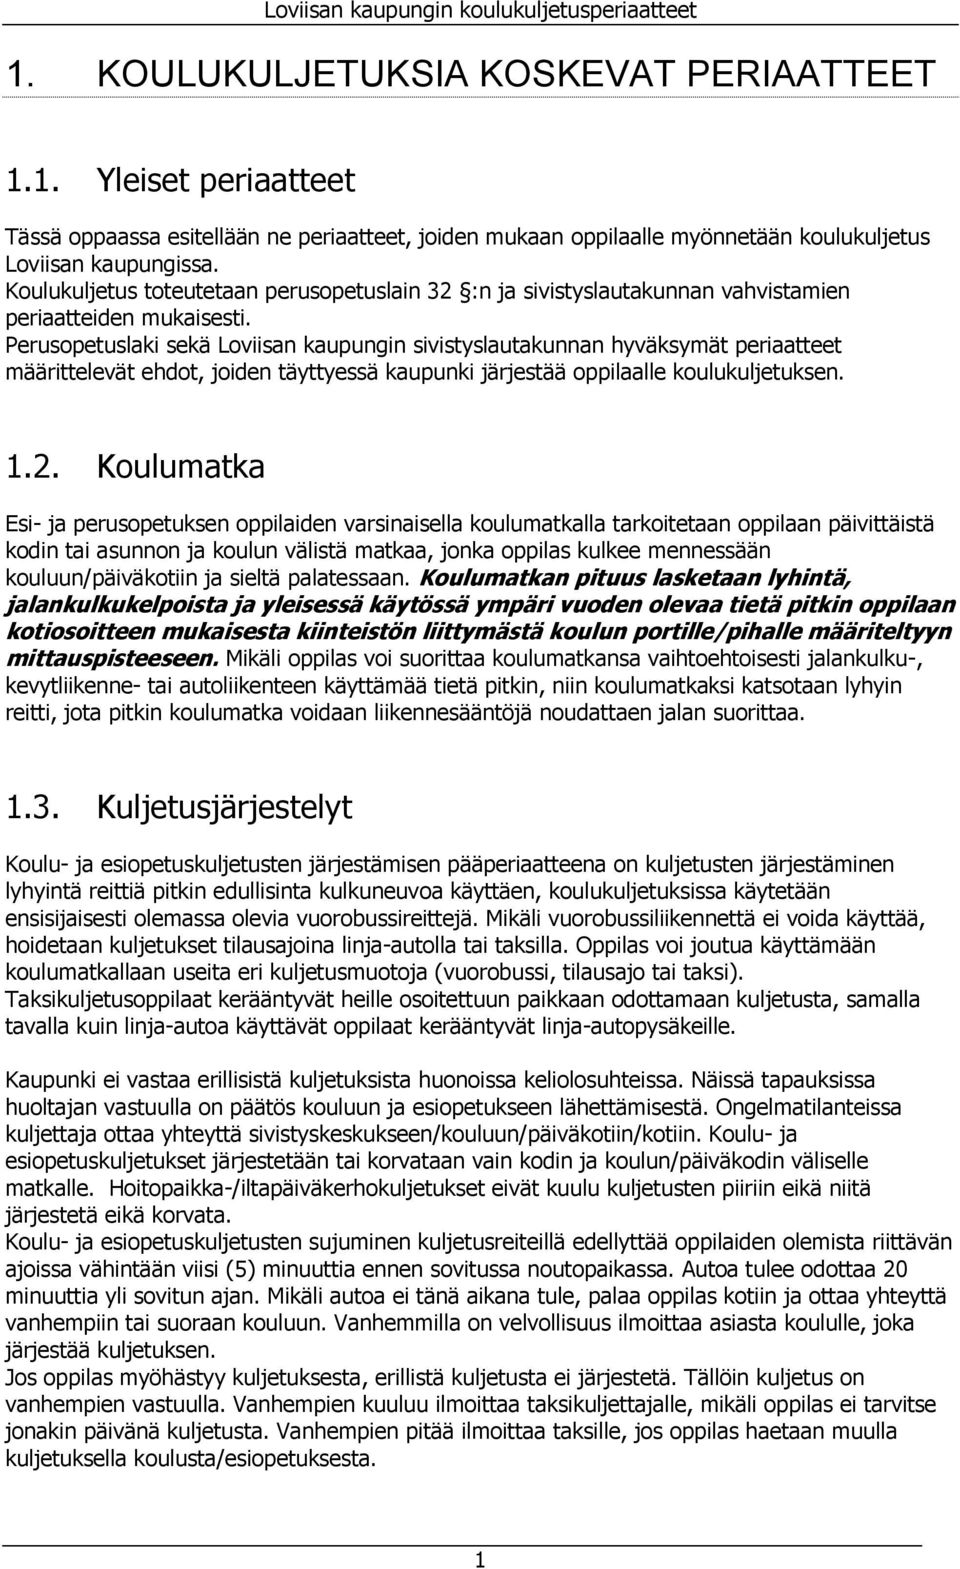 Perusopetuslaki sekä Loviisan kaupungin sivistyslautakunnan hyväksymät periaatteet määrittelevät ehdot, joiden täyttyessä kaupunki järjestää oppilaalle koulukuljetuksen. 1.2.